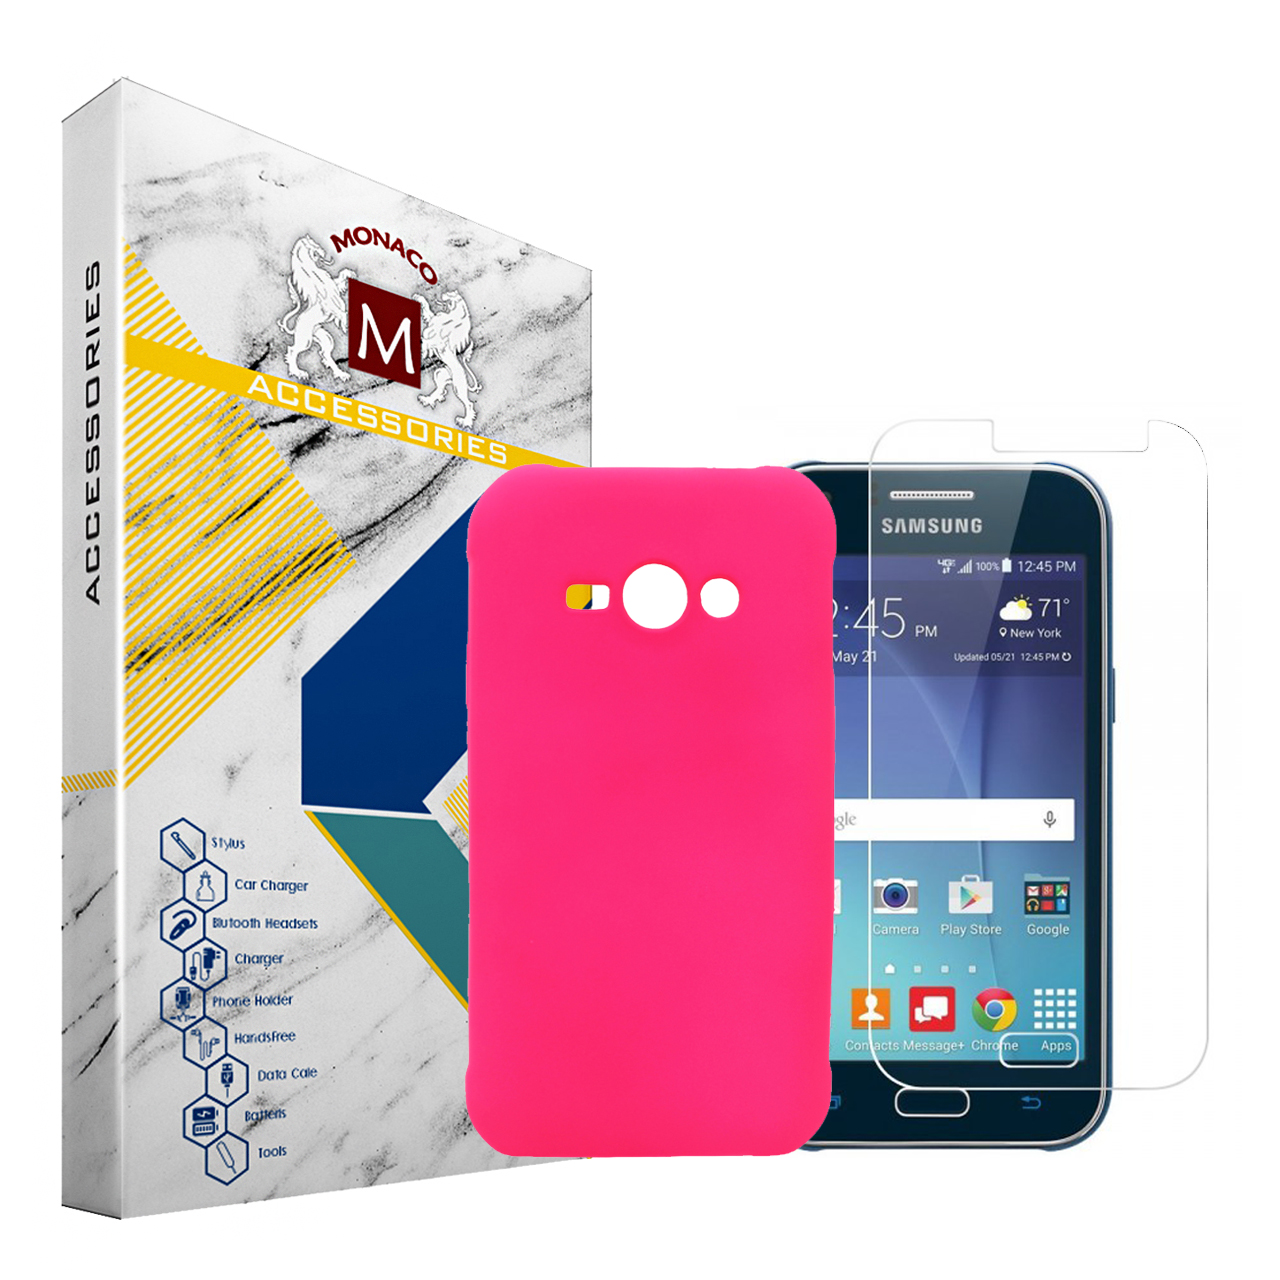 کاور موناکو مدل Sn070 مناسب برای گوشی موبایل سامسونگ Galaxy J1 Ace به همراه محافظ صفحه نمایش